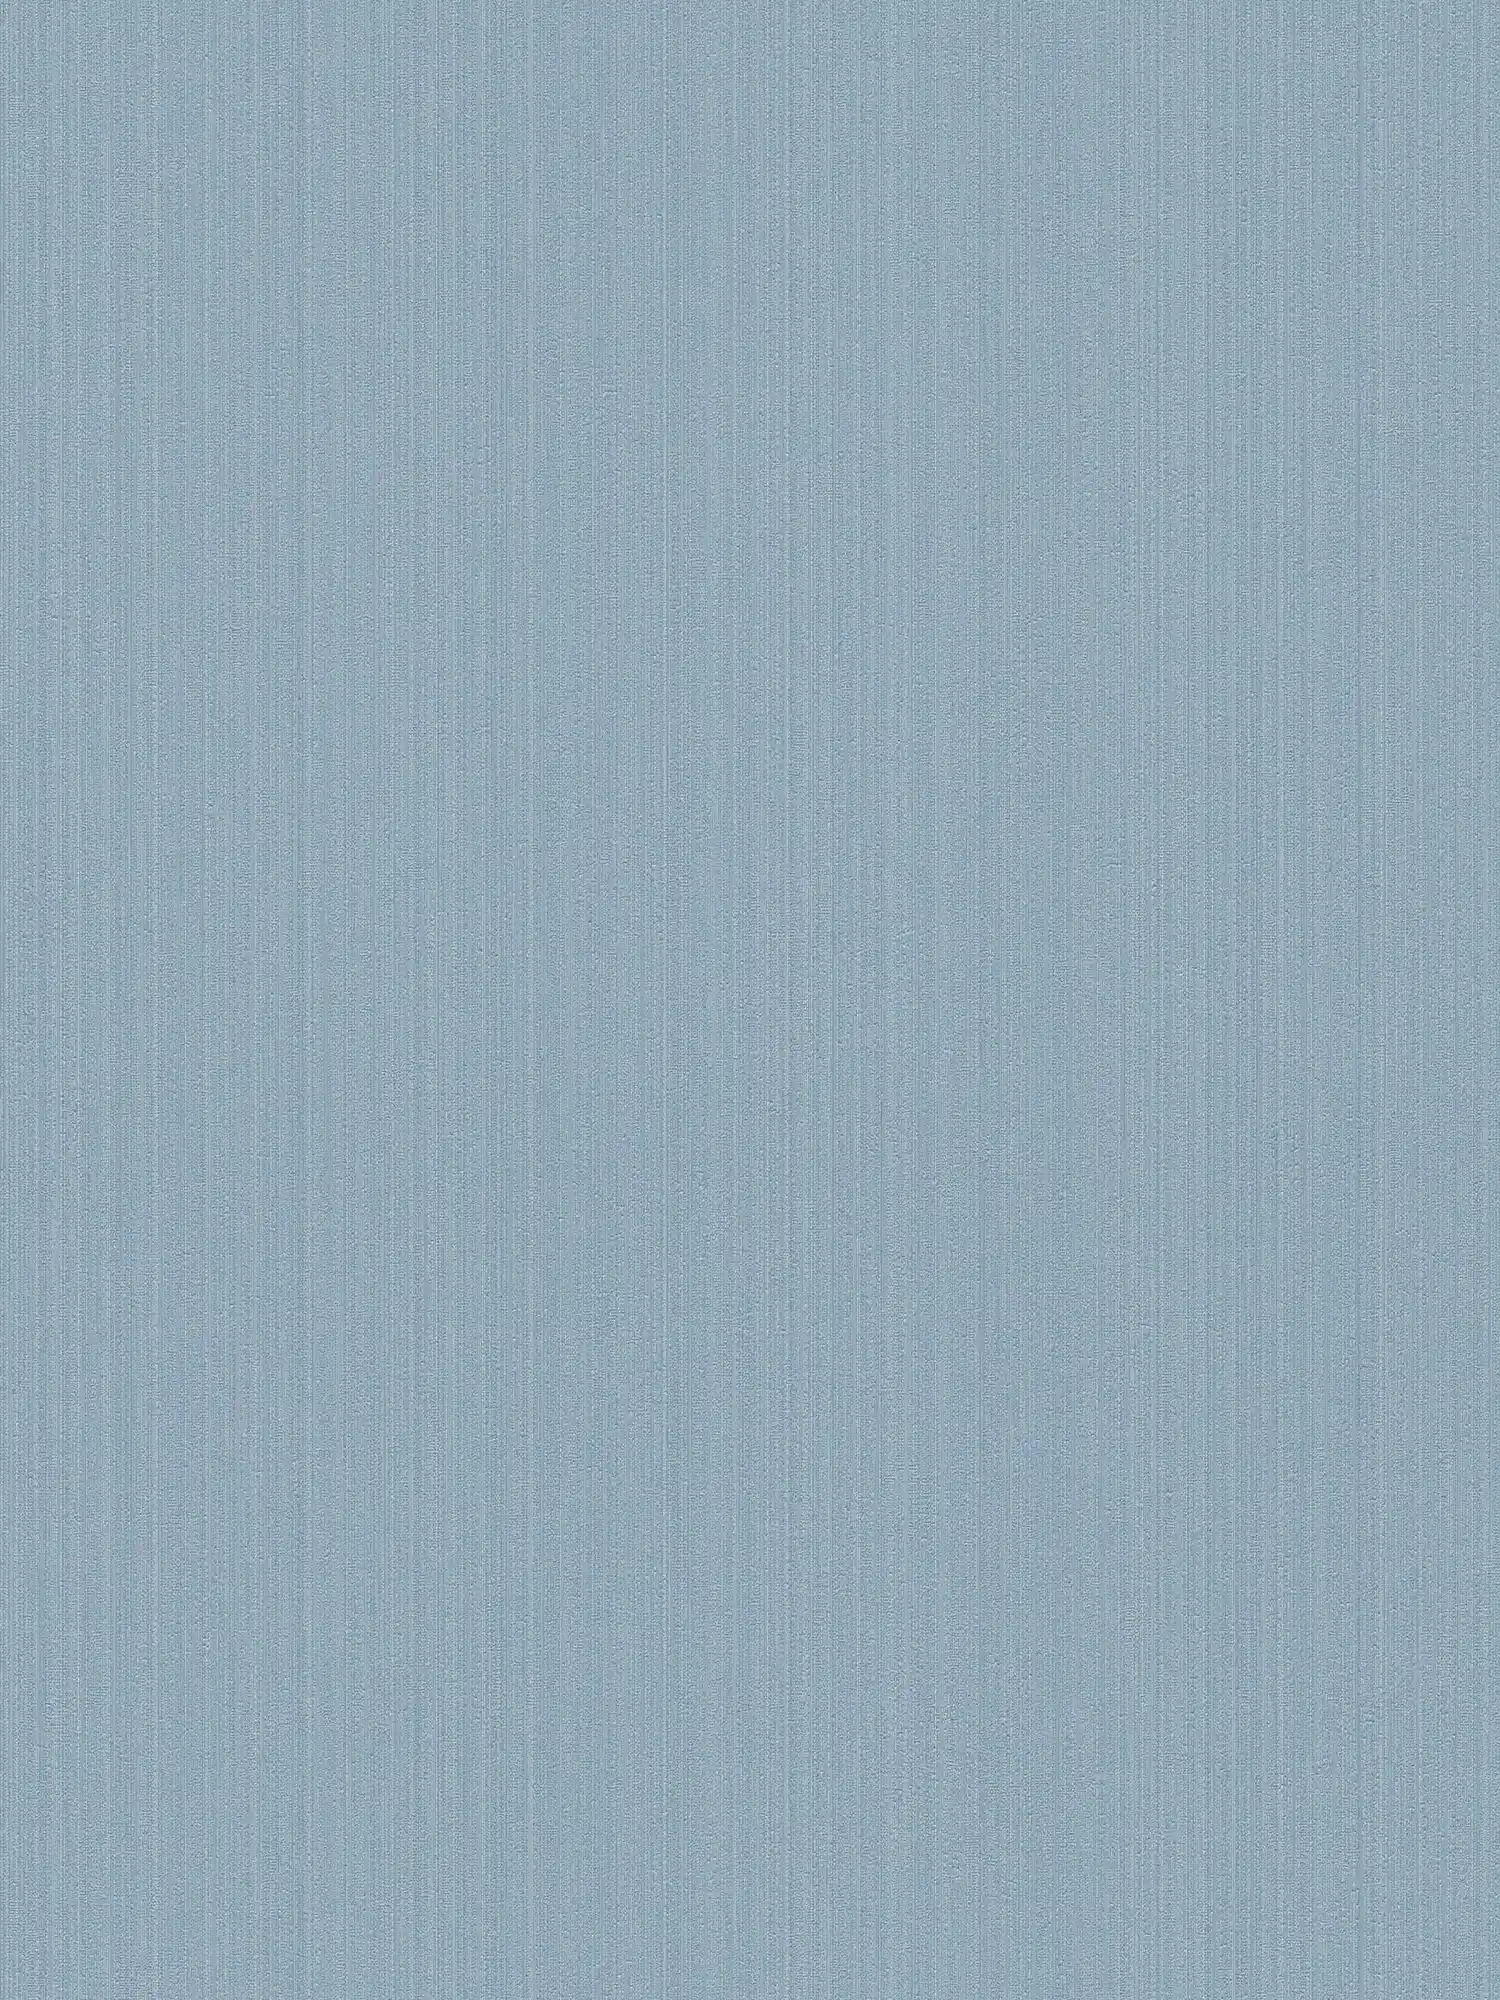 Blauw vliesbehang effen, zijdemat met textuureffect
